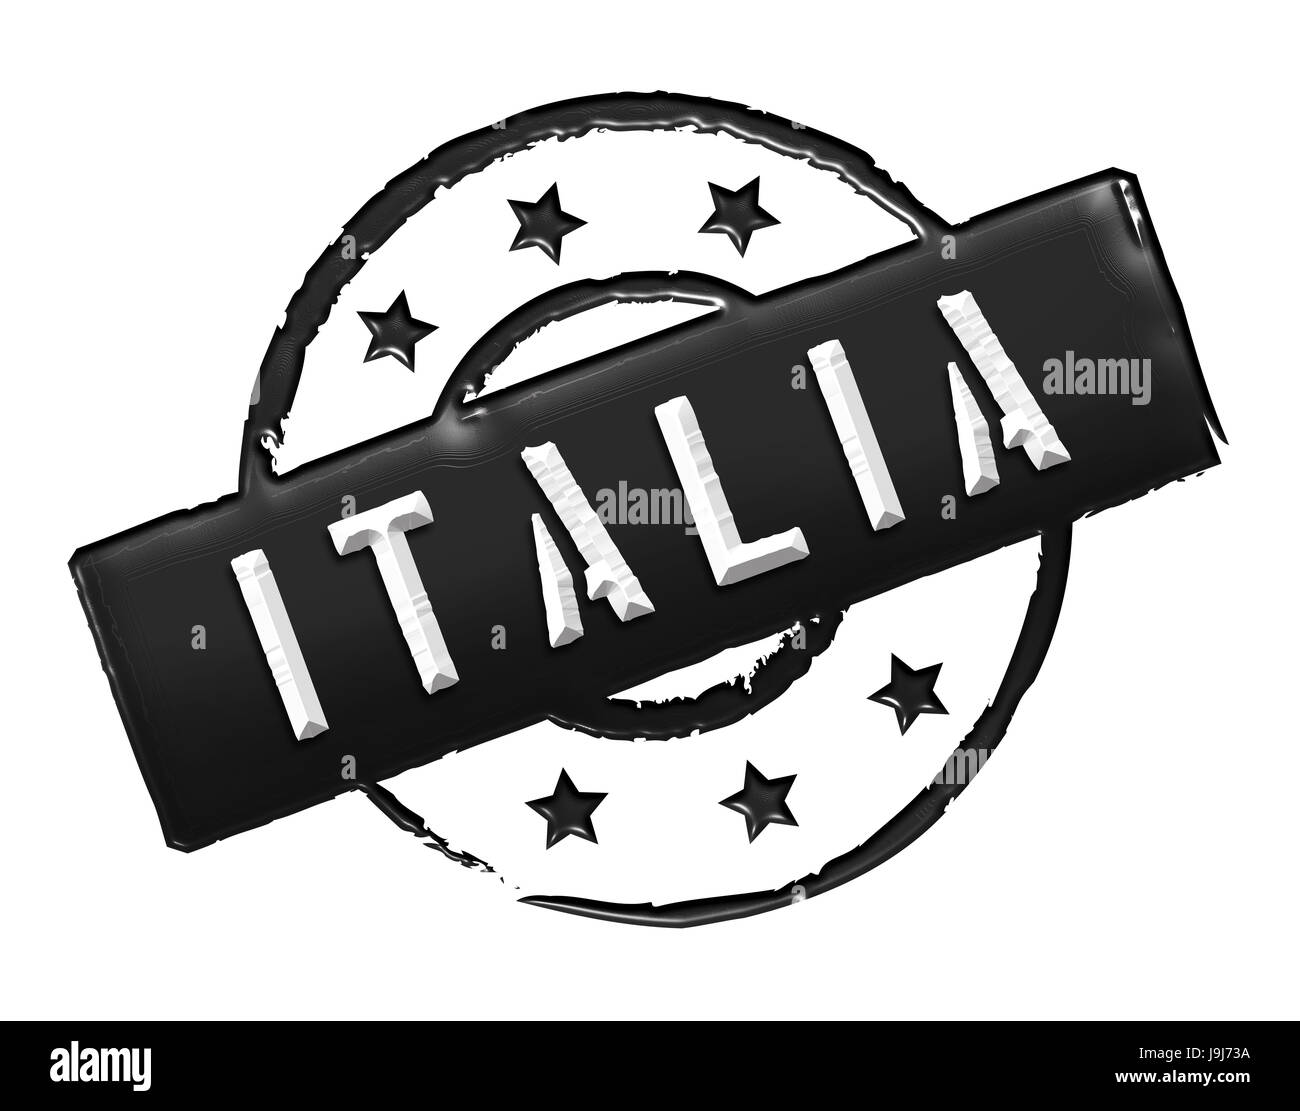 Rome, roma, italia, italy, isolated, army, venice, Rome, roma, caution, Stock Photo